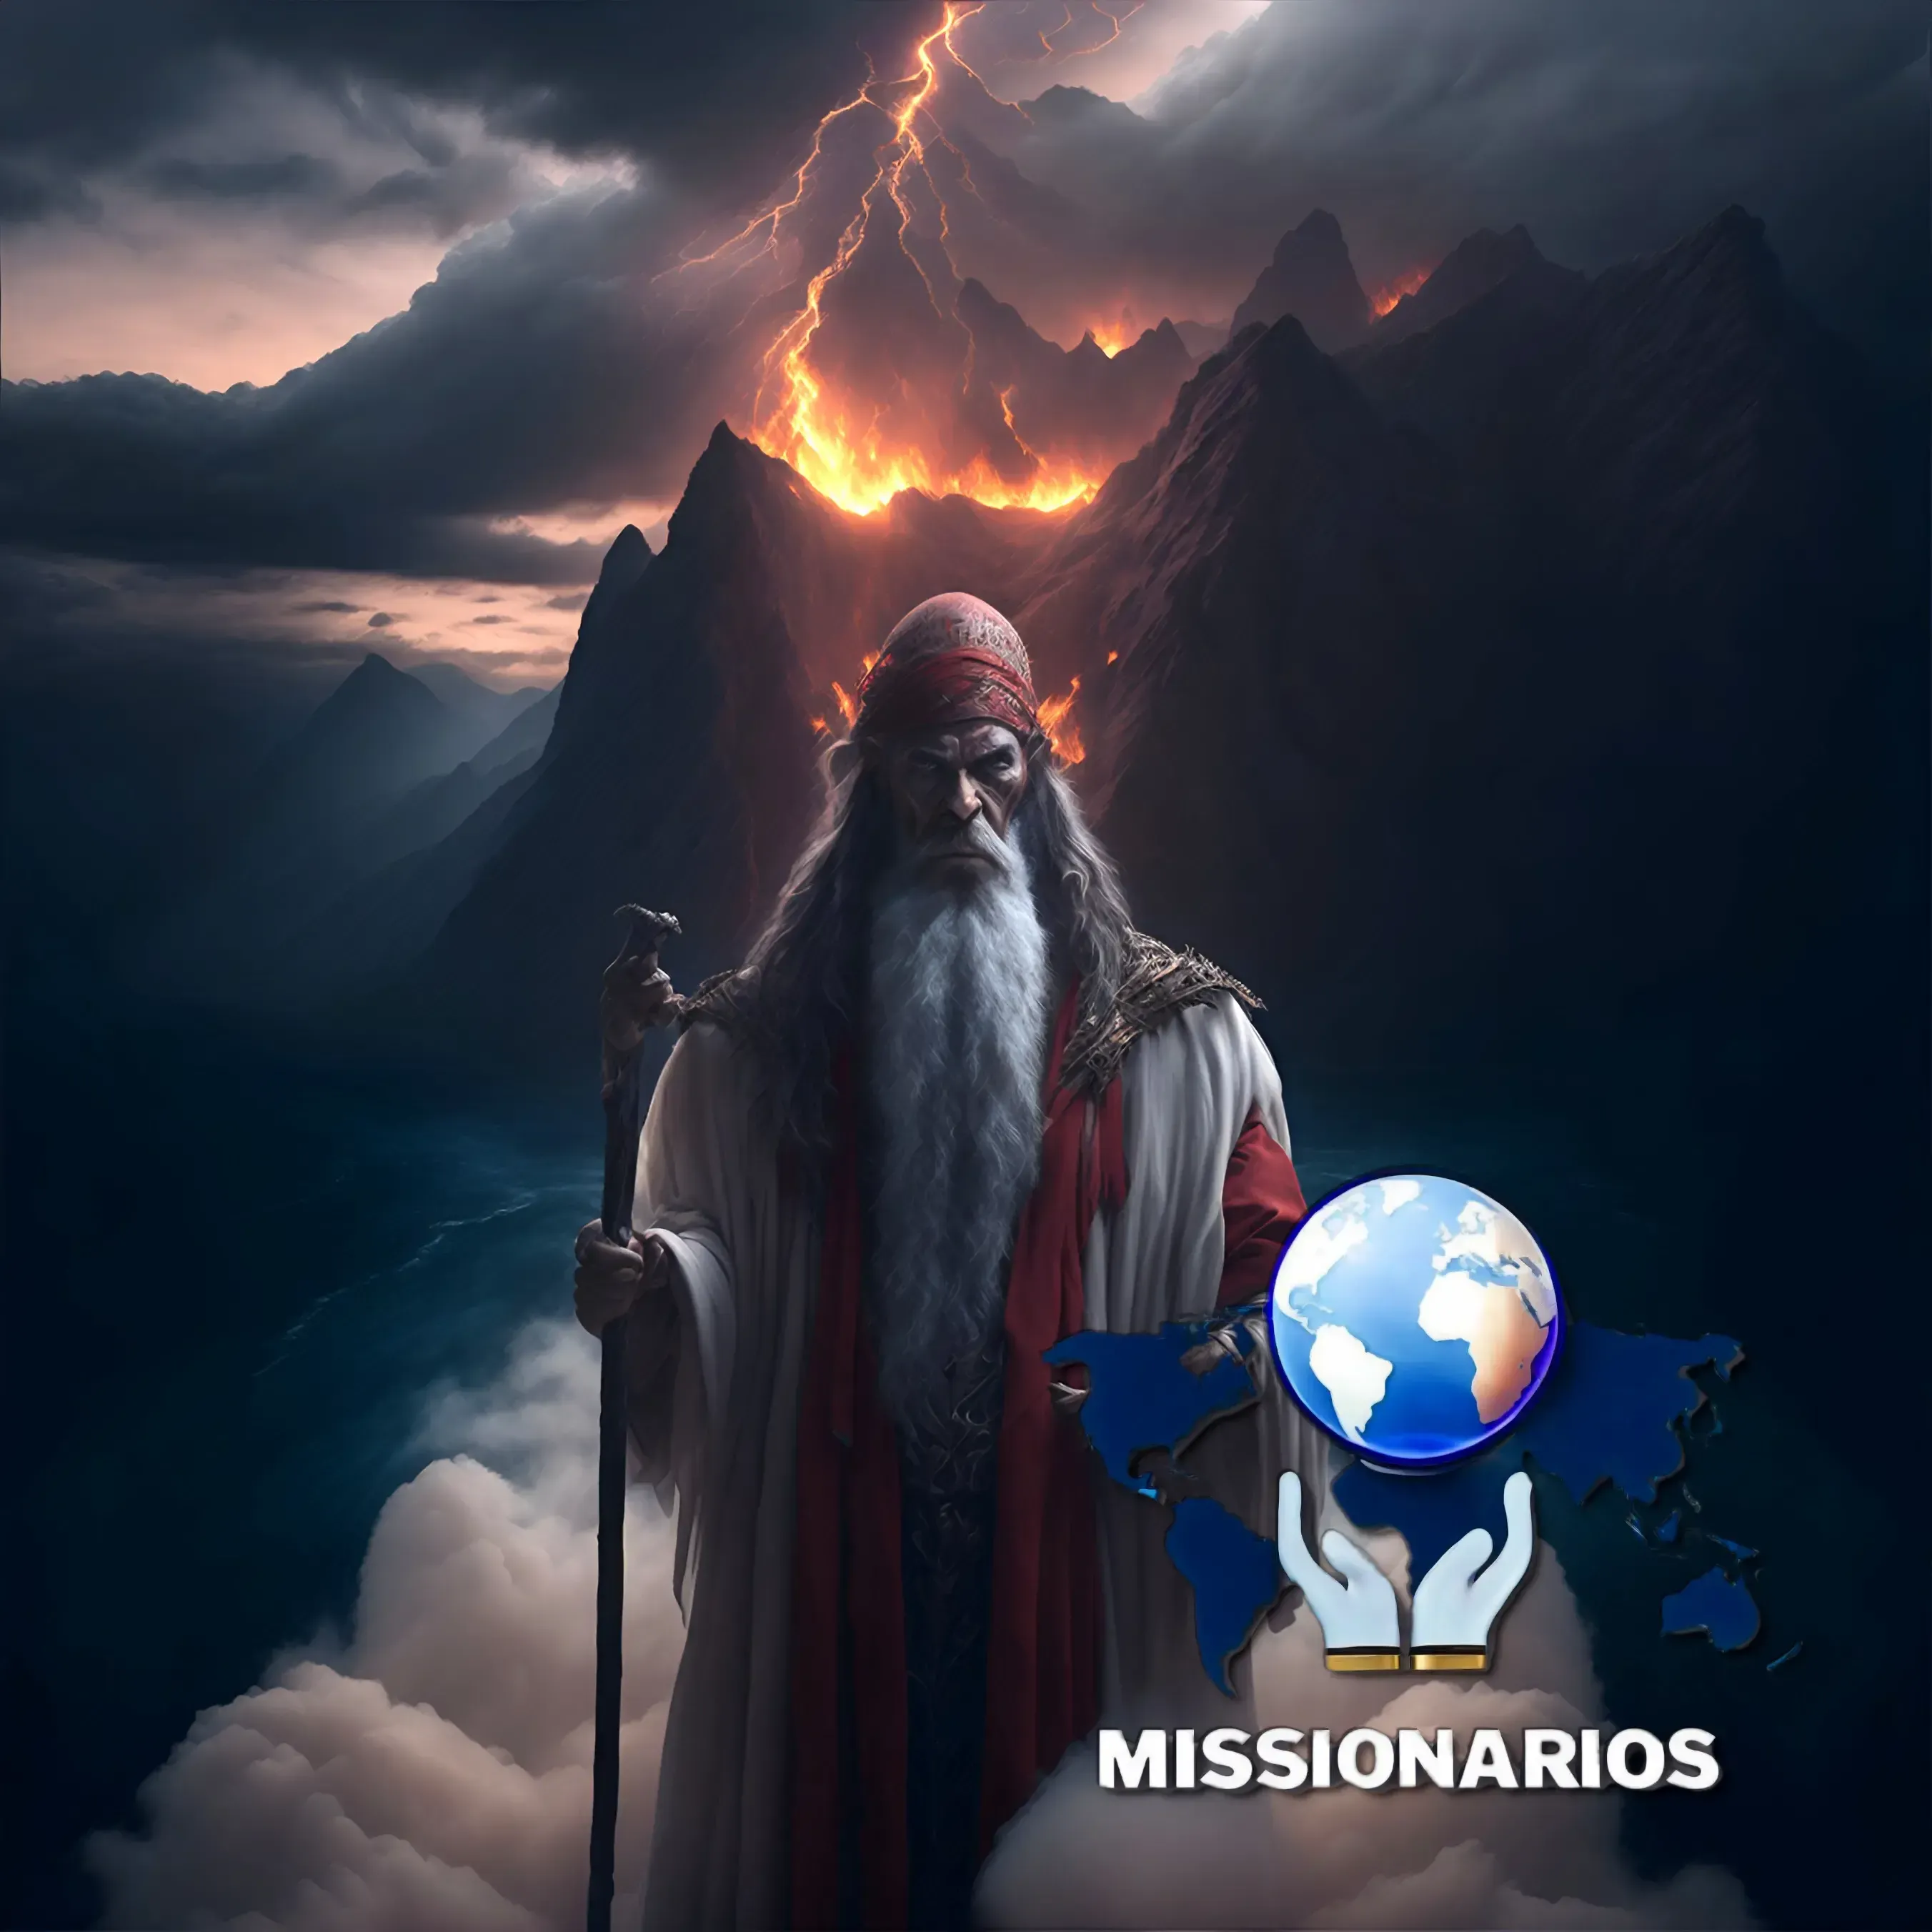 A imagem mostra uma representação de Moisés, com longas barbas brancas, segurando o cajado, de pé sobre uma nuvem espessa, ao fundo vemos uma coluna de fogo, e o mar vermelho.